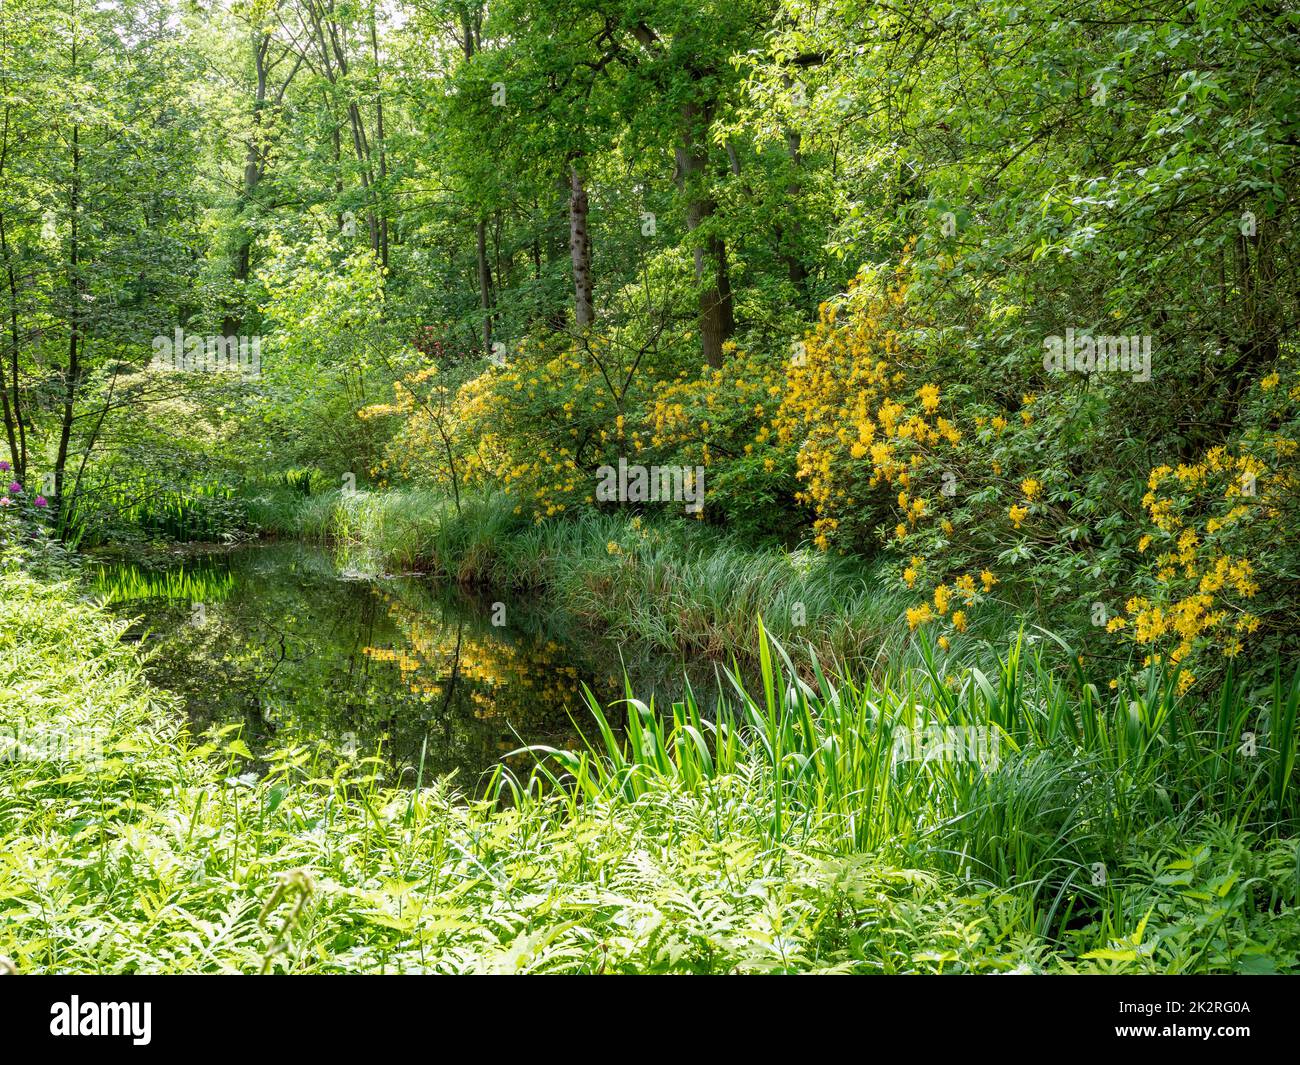 Étang dans un bois entouré de végétation verte et de fleurs jaunes Banque D'Images